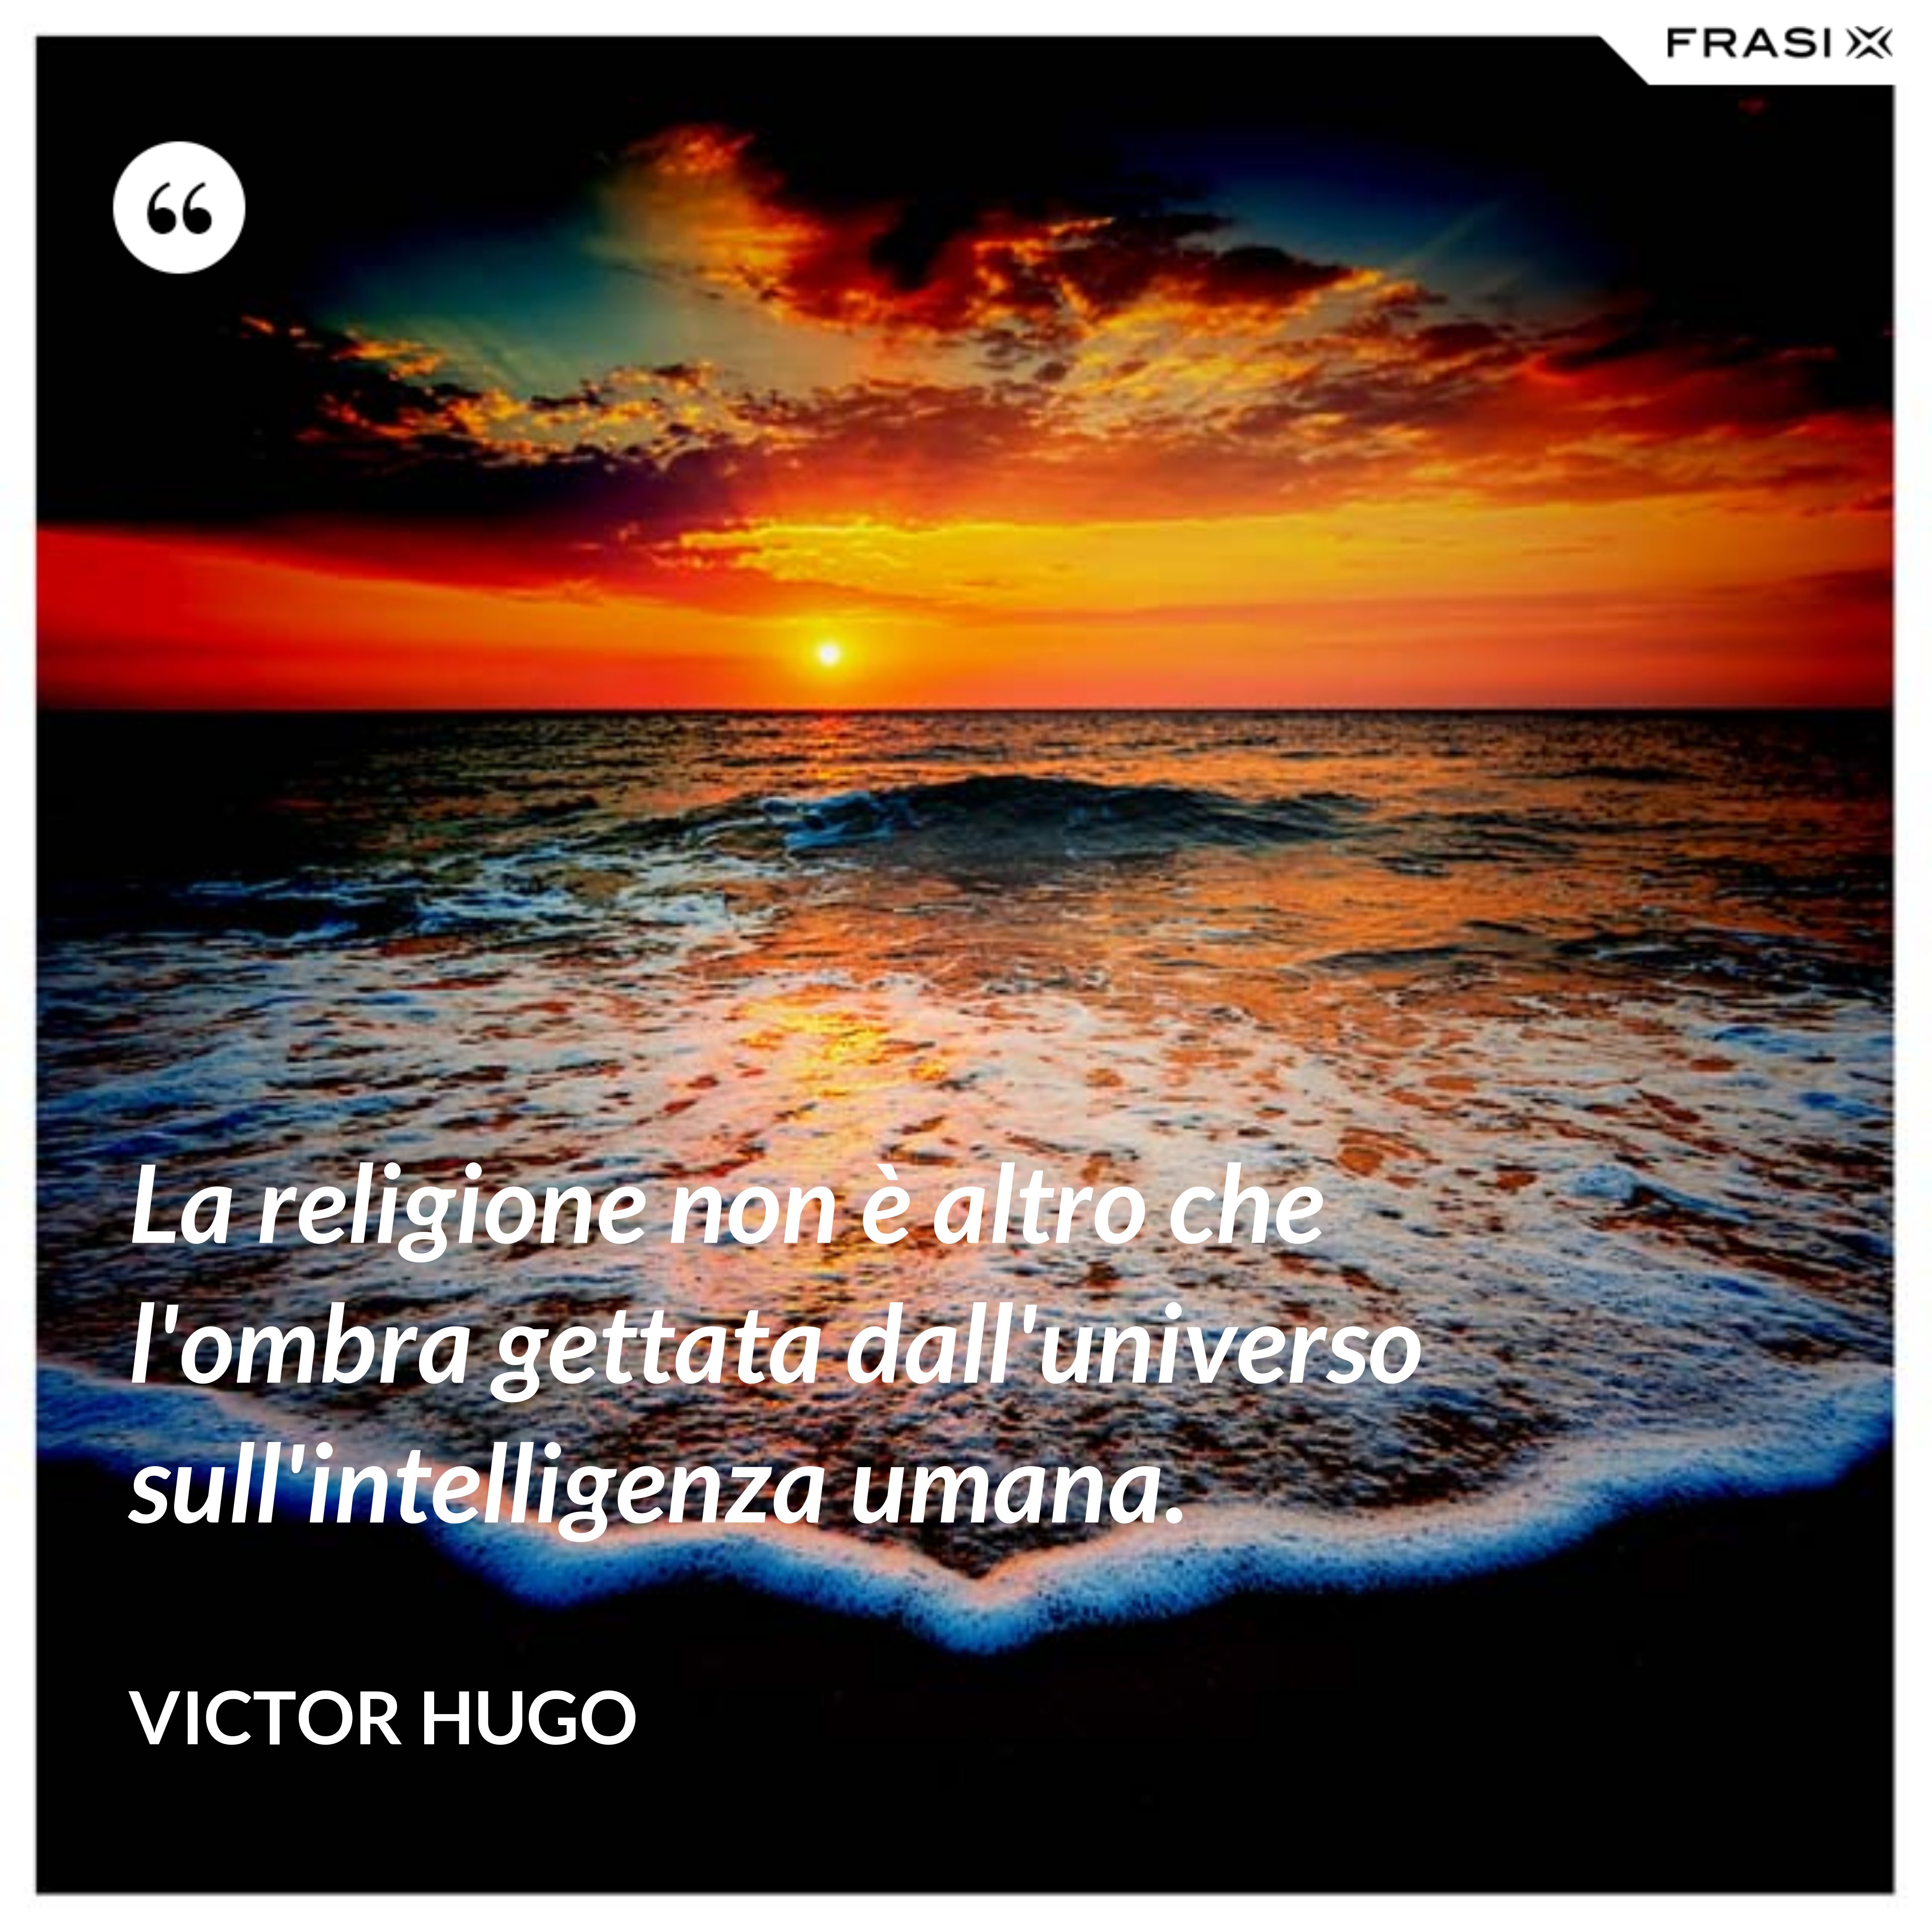 La religione non è altro che l'ombra gettata dall'universo sull'intelligenza umana. - Victor Hugo